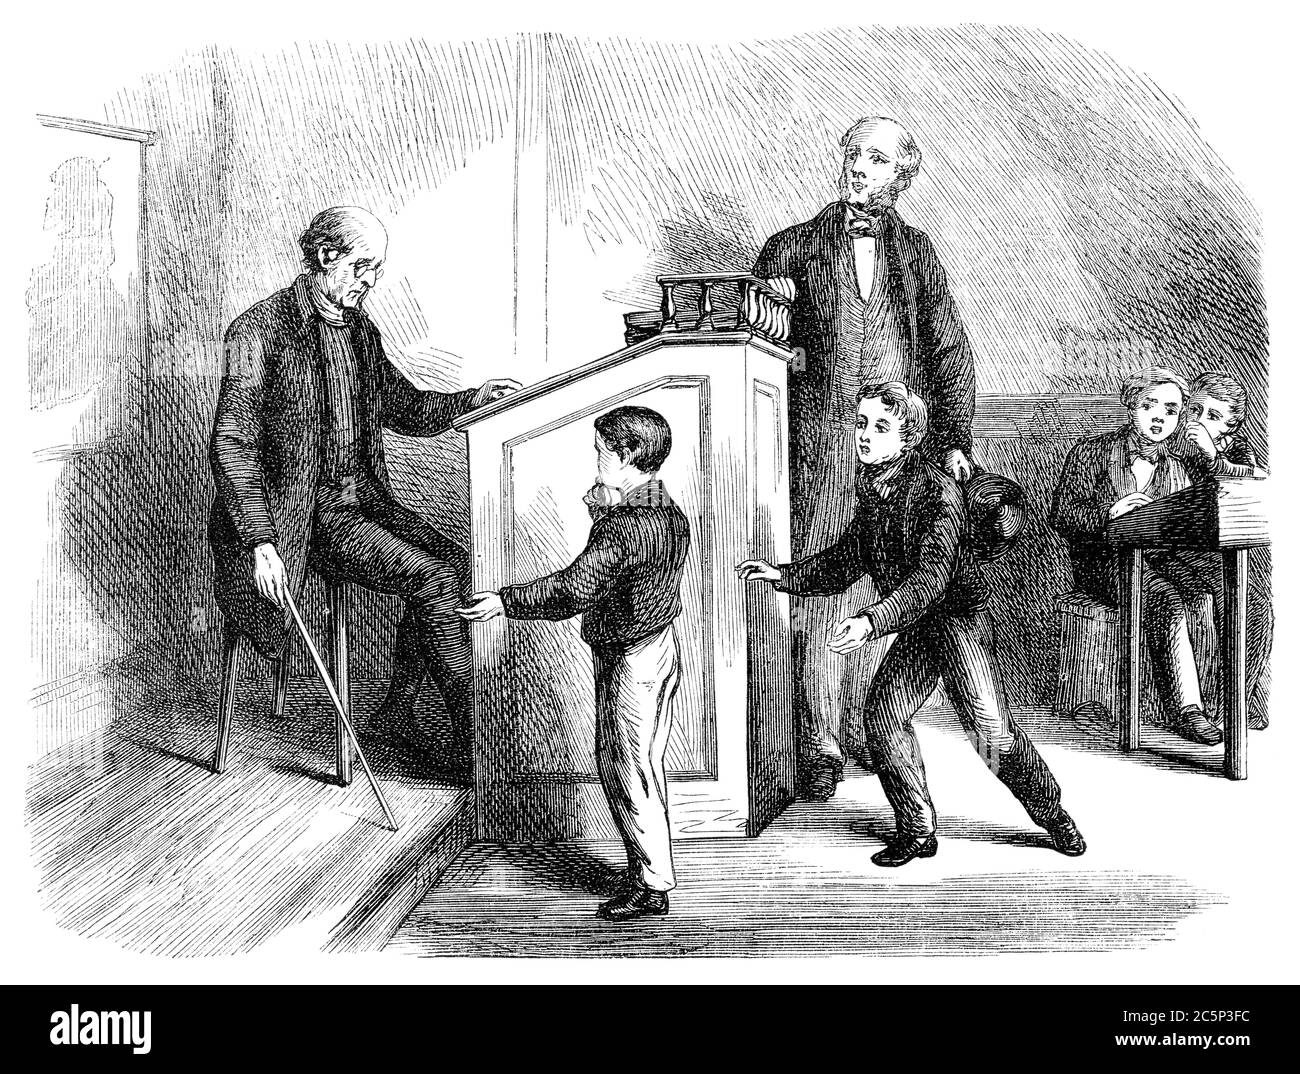 Eine gravierte Illustration Bild eines Lehrers in einer Schule Klassenzimmer geben einem Jungen Schüler Prügelstrafe Disziplin aus einem viktorianischen Buch datiert 1870 tha Stockfoto